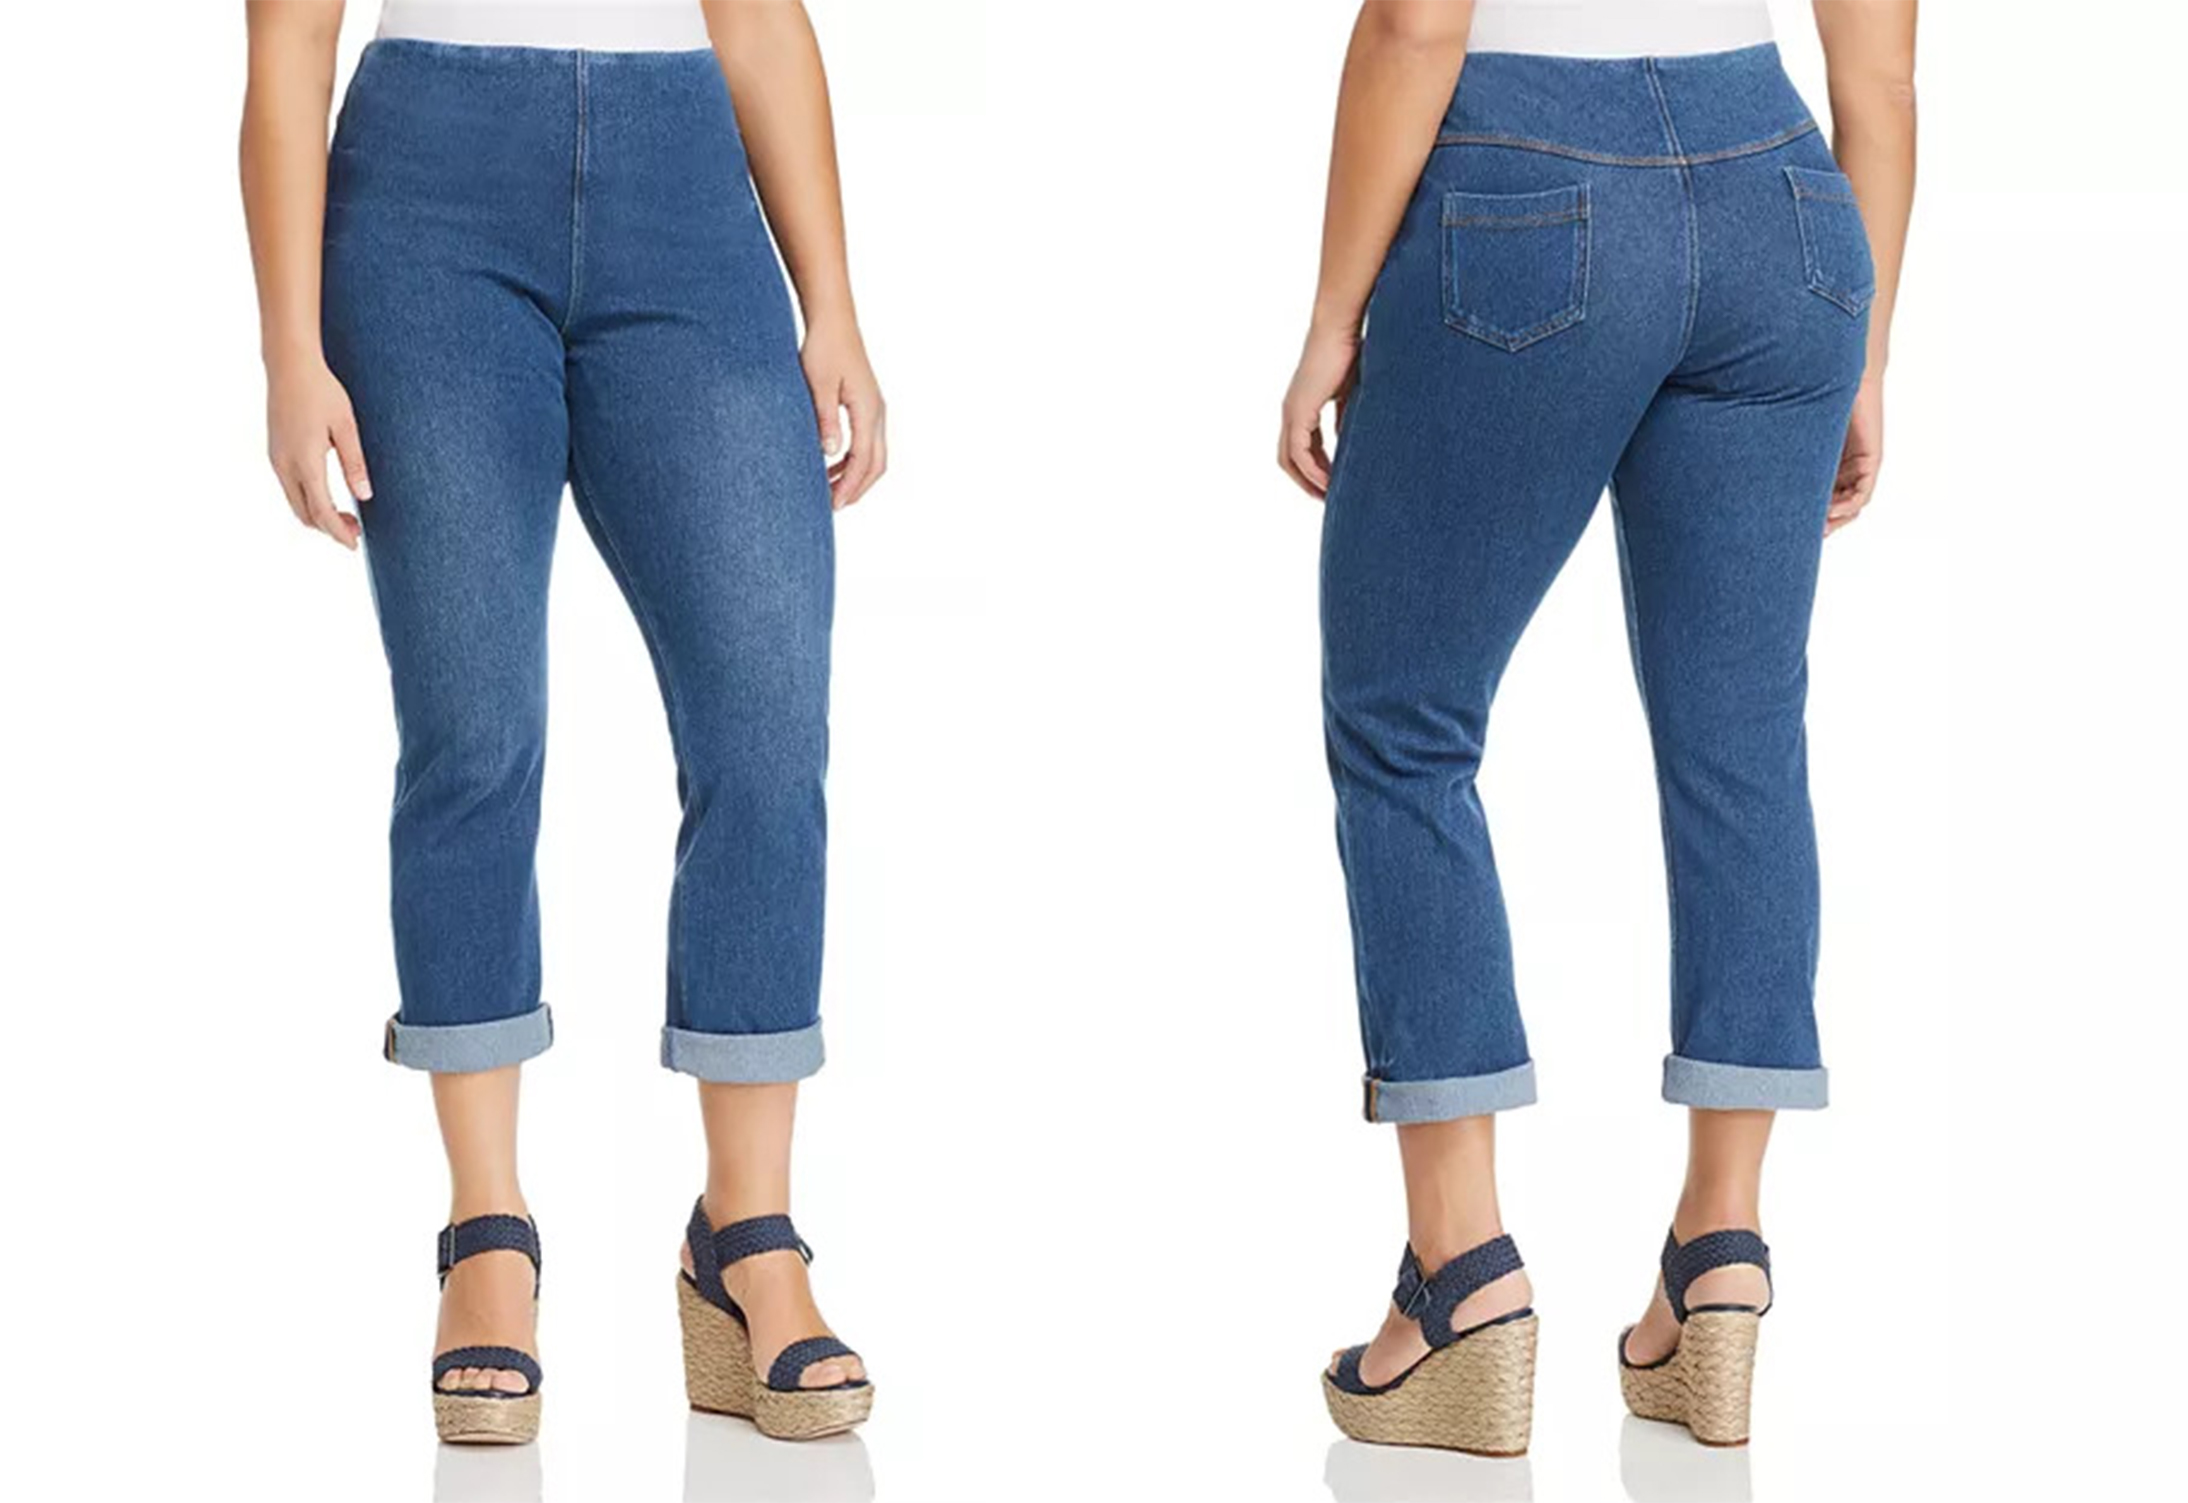 Los 10 jeans más cómodos para hombres y mujeres - 23